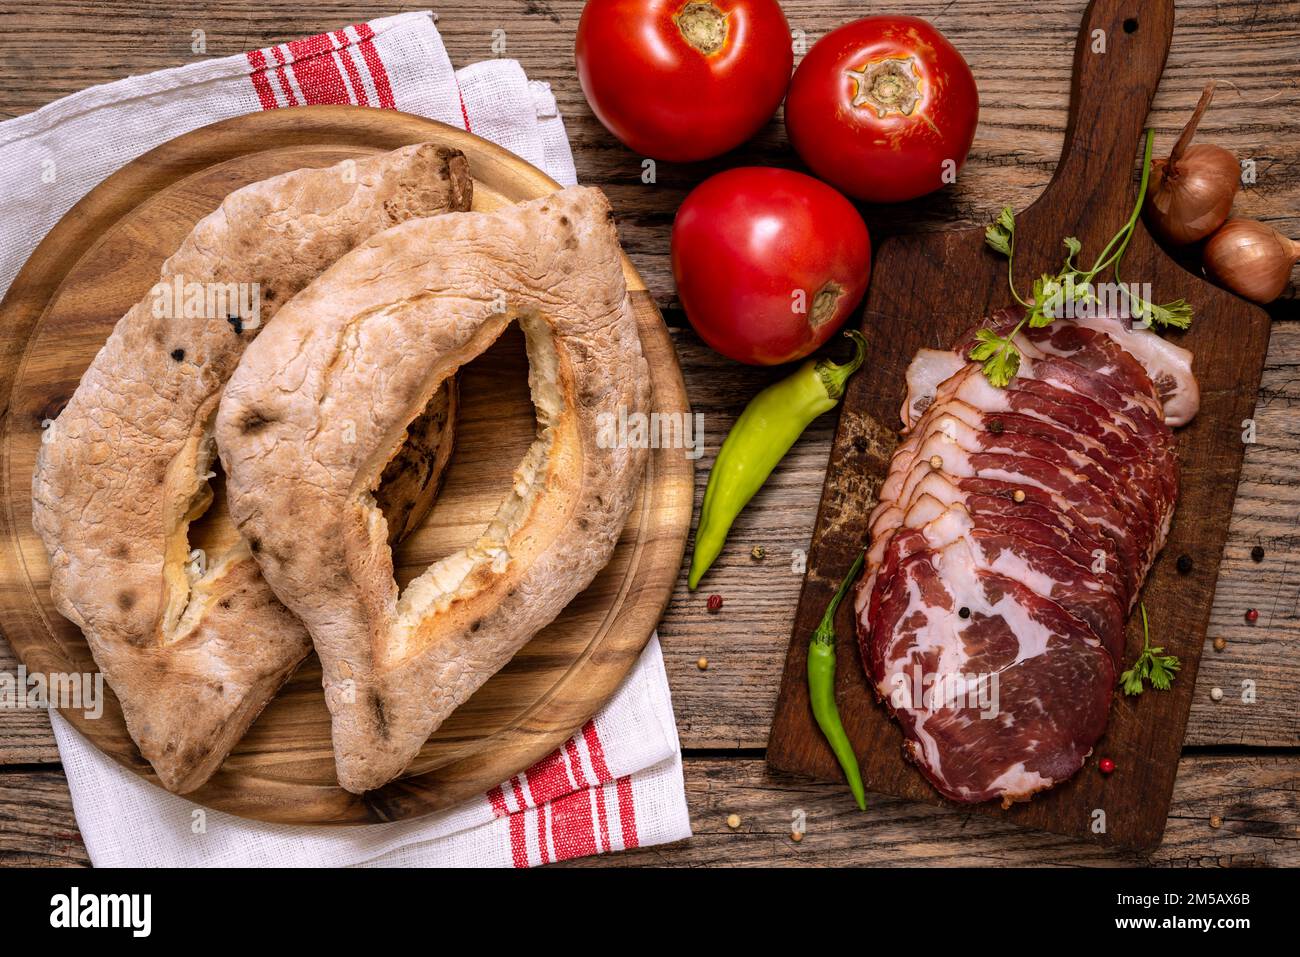 Tradizionale serbo focaccine al forno fatte in casa (lepinja), verdure e tagliere con prosciutto affettato su tavola di legno. Foto Stock